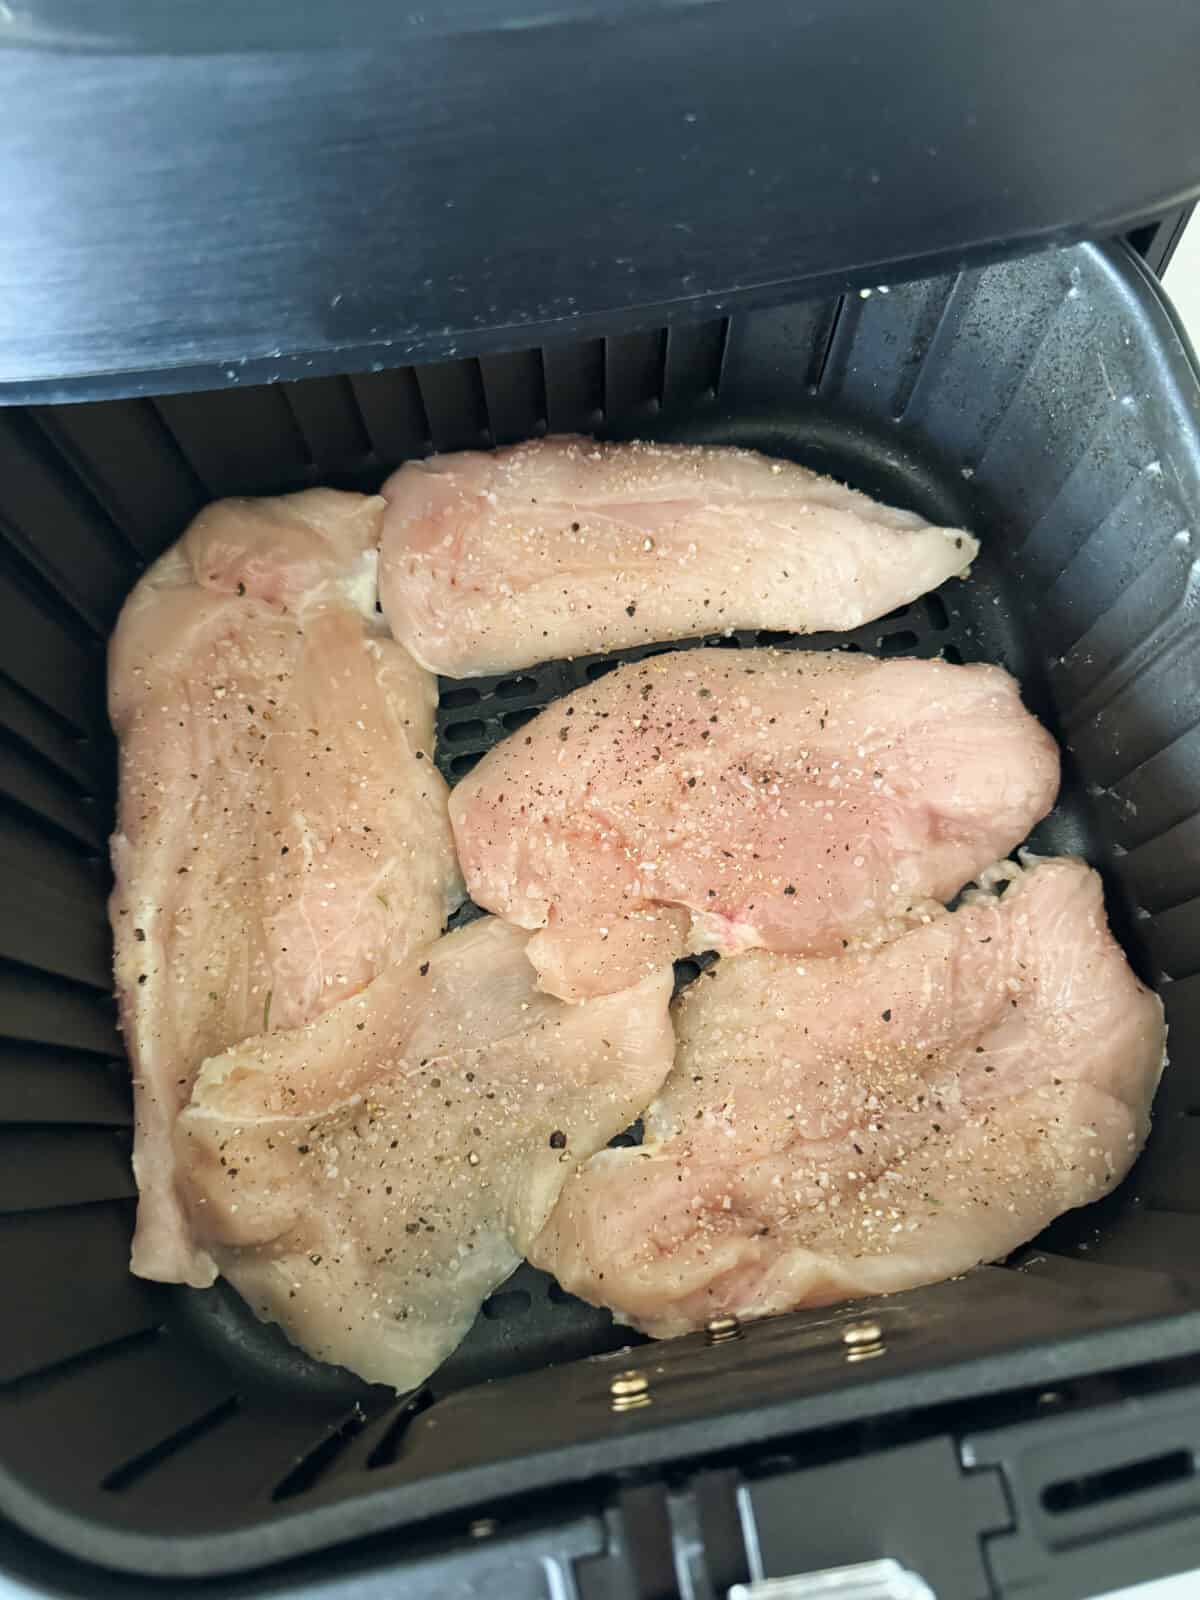 raw chicken placed in air fryer basket